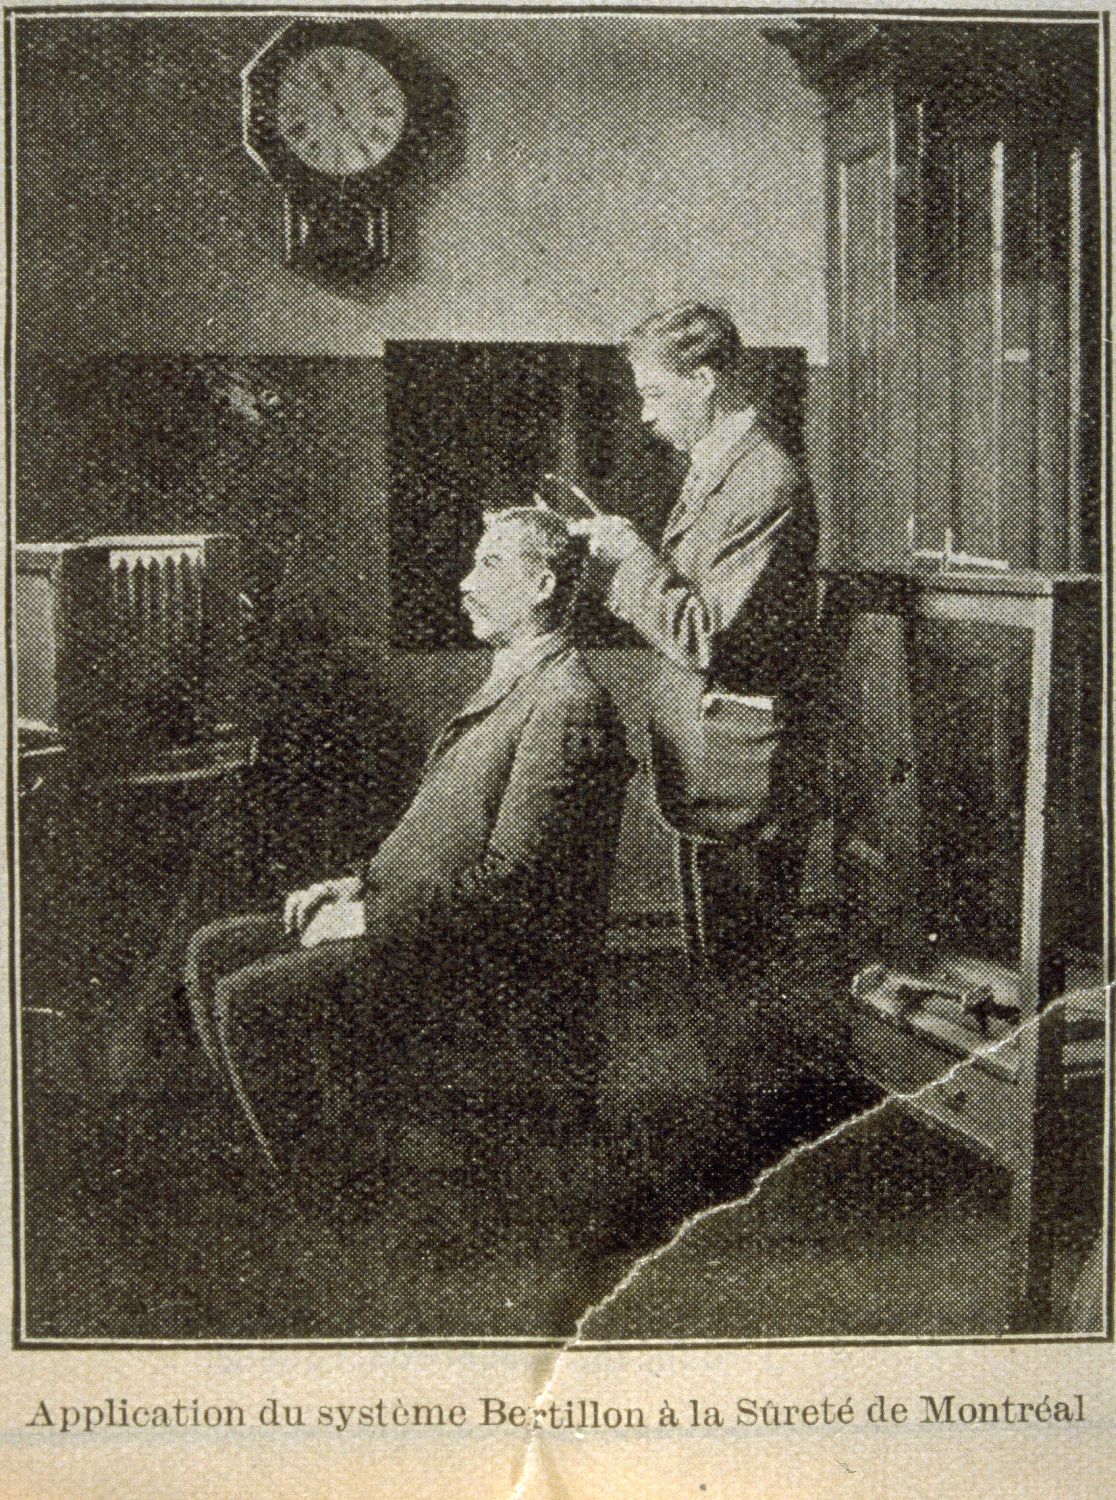 Coupure de journal en sépia qui montre une scène d’intérieur. Un homme debout mesure la tête d’un second homme assis sur une chaise, vue de profil.